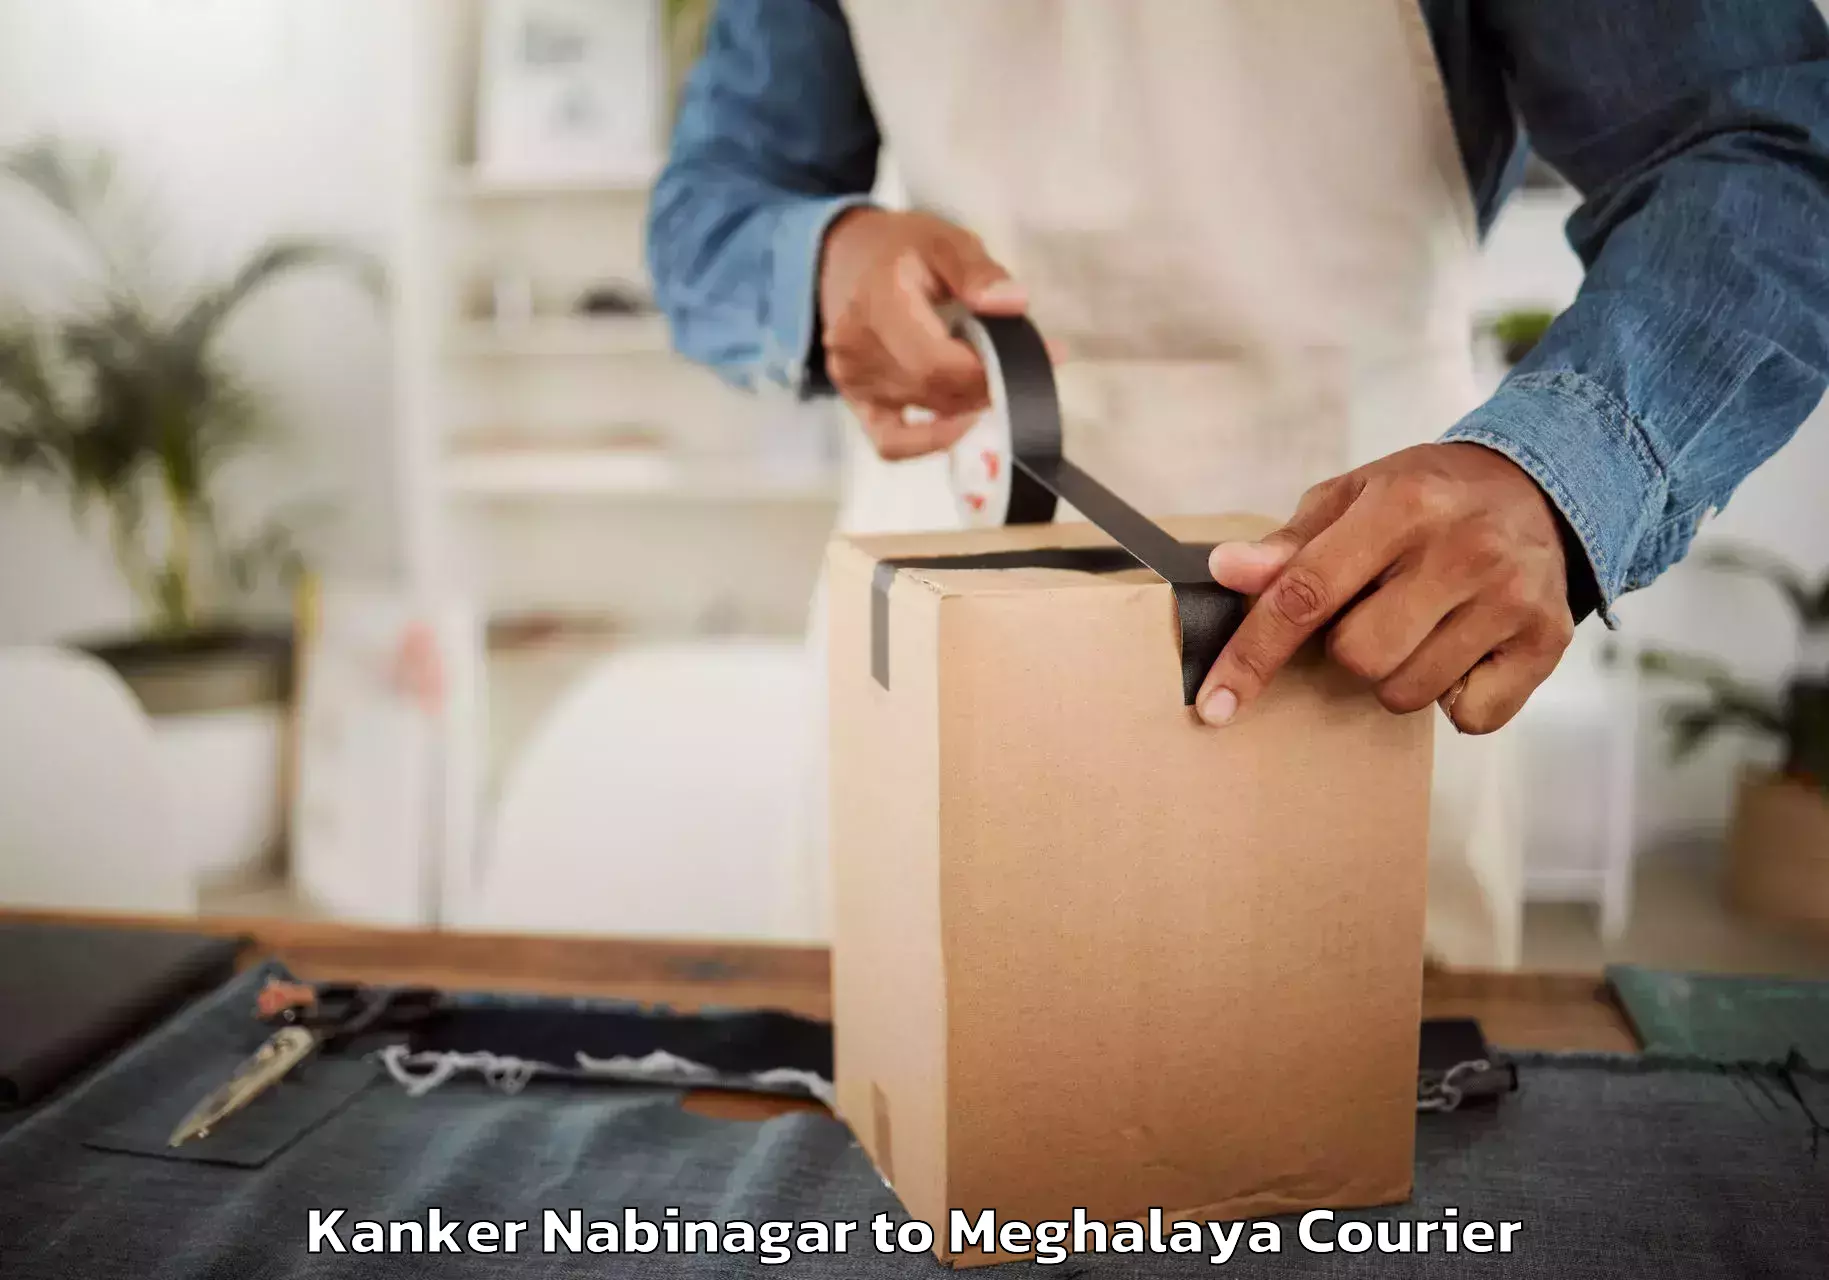 Furniture transport experts Kanker Nabinagar to Meghalaya